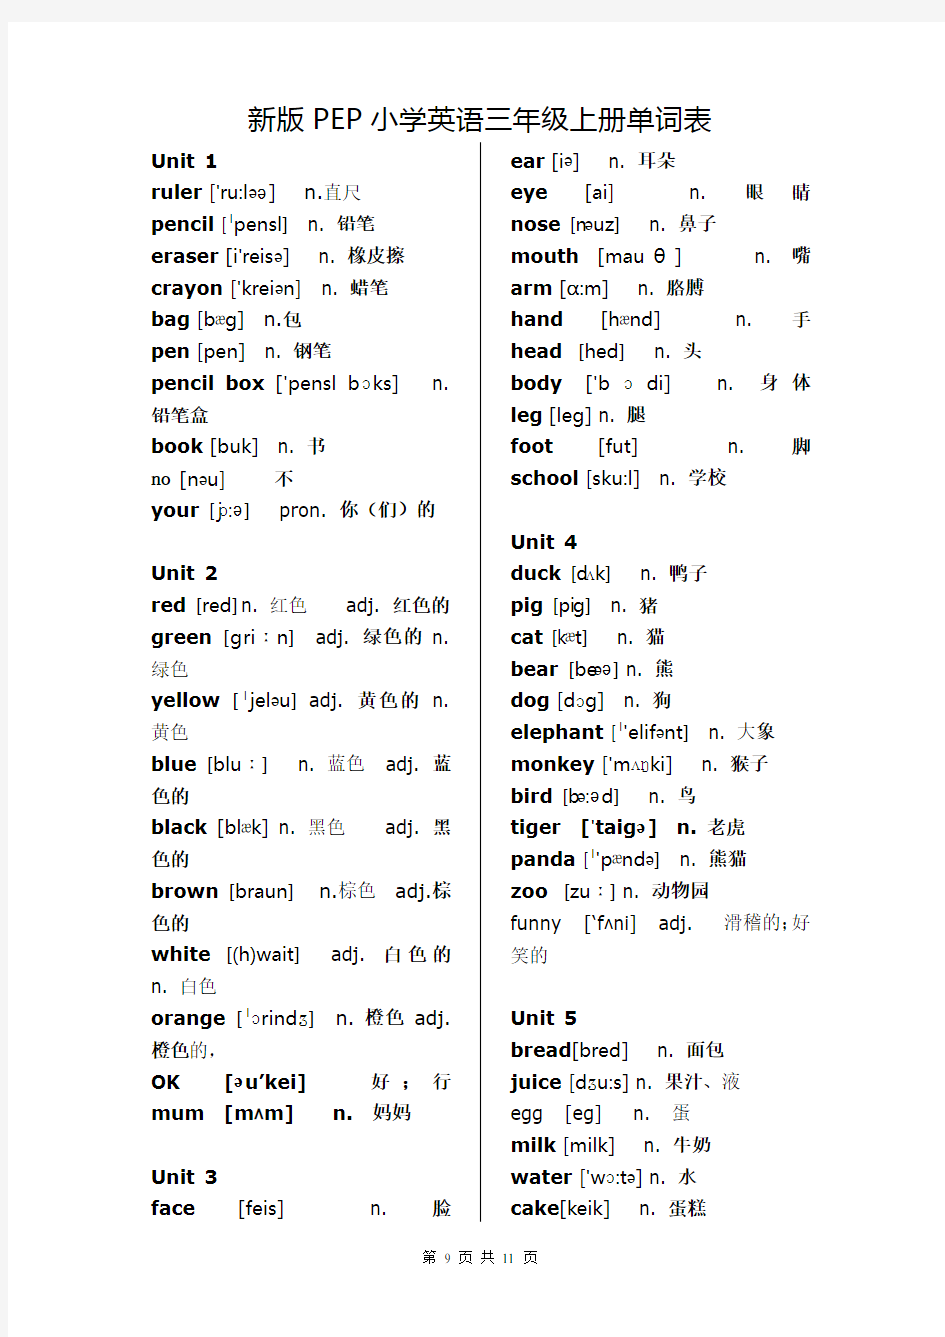 新版PEP小学英语(3-5年级)单词表